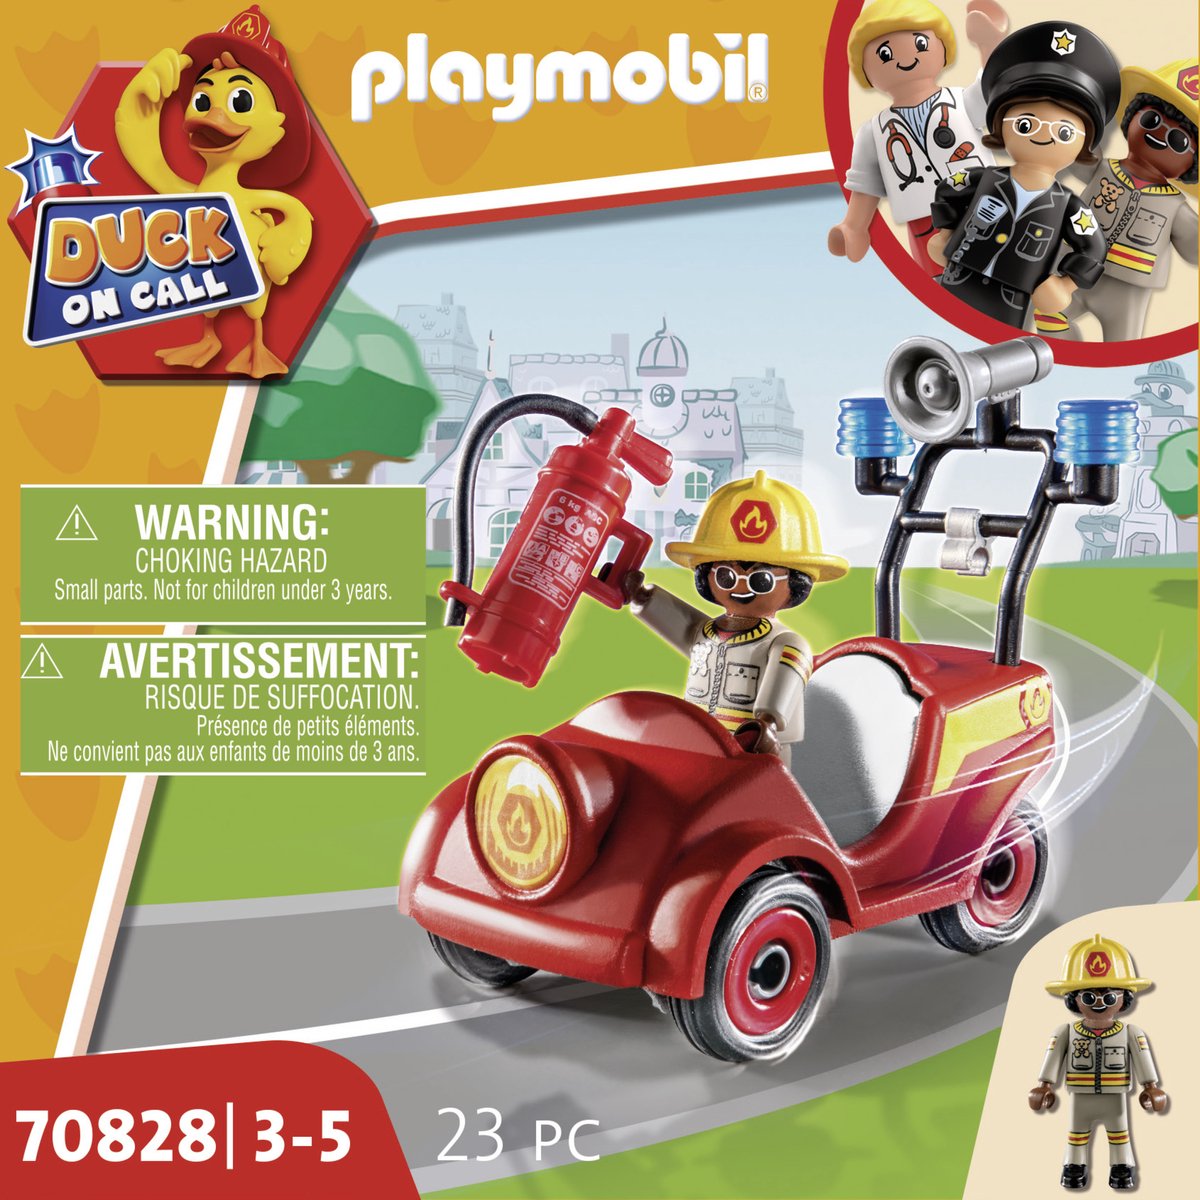 Playmobil 70901 Calendrier de l'Avent Duck on Call 3-5 ans acheter à prix  réduit